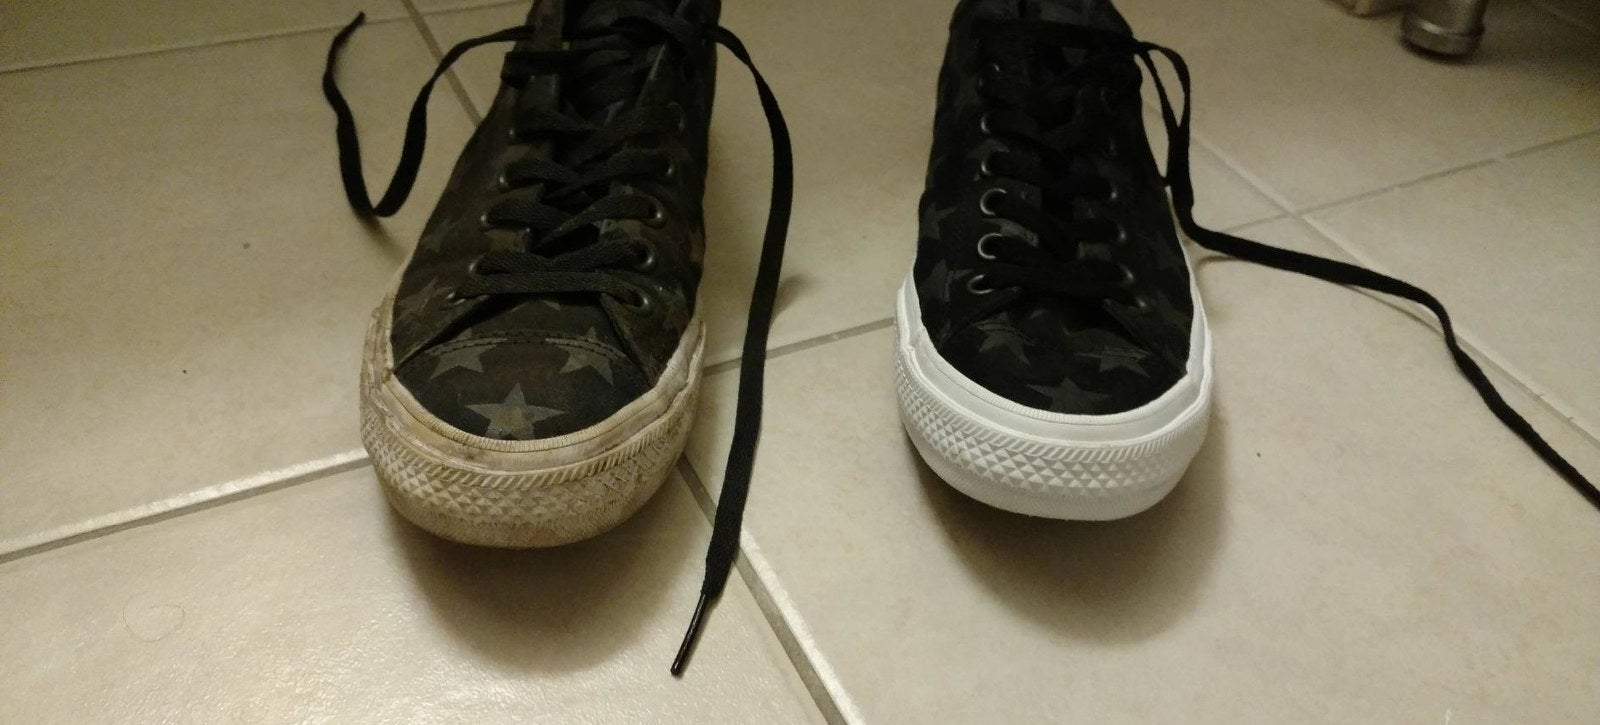 评论家# x27; s一双运动鞋:一个看起来非常脏鞋底和双方和其他基本全新的白色